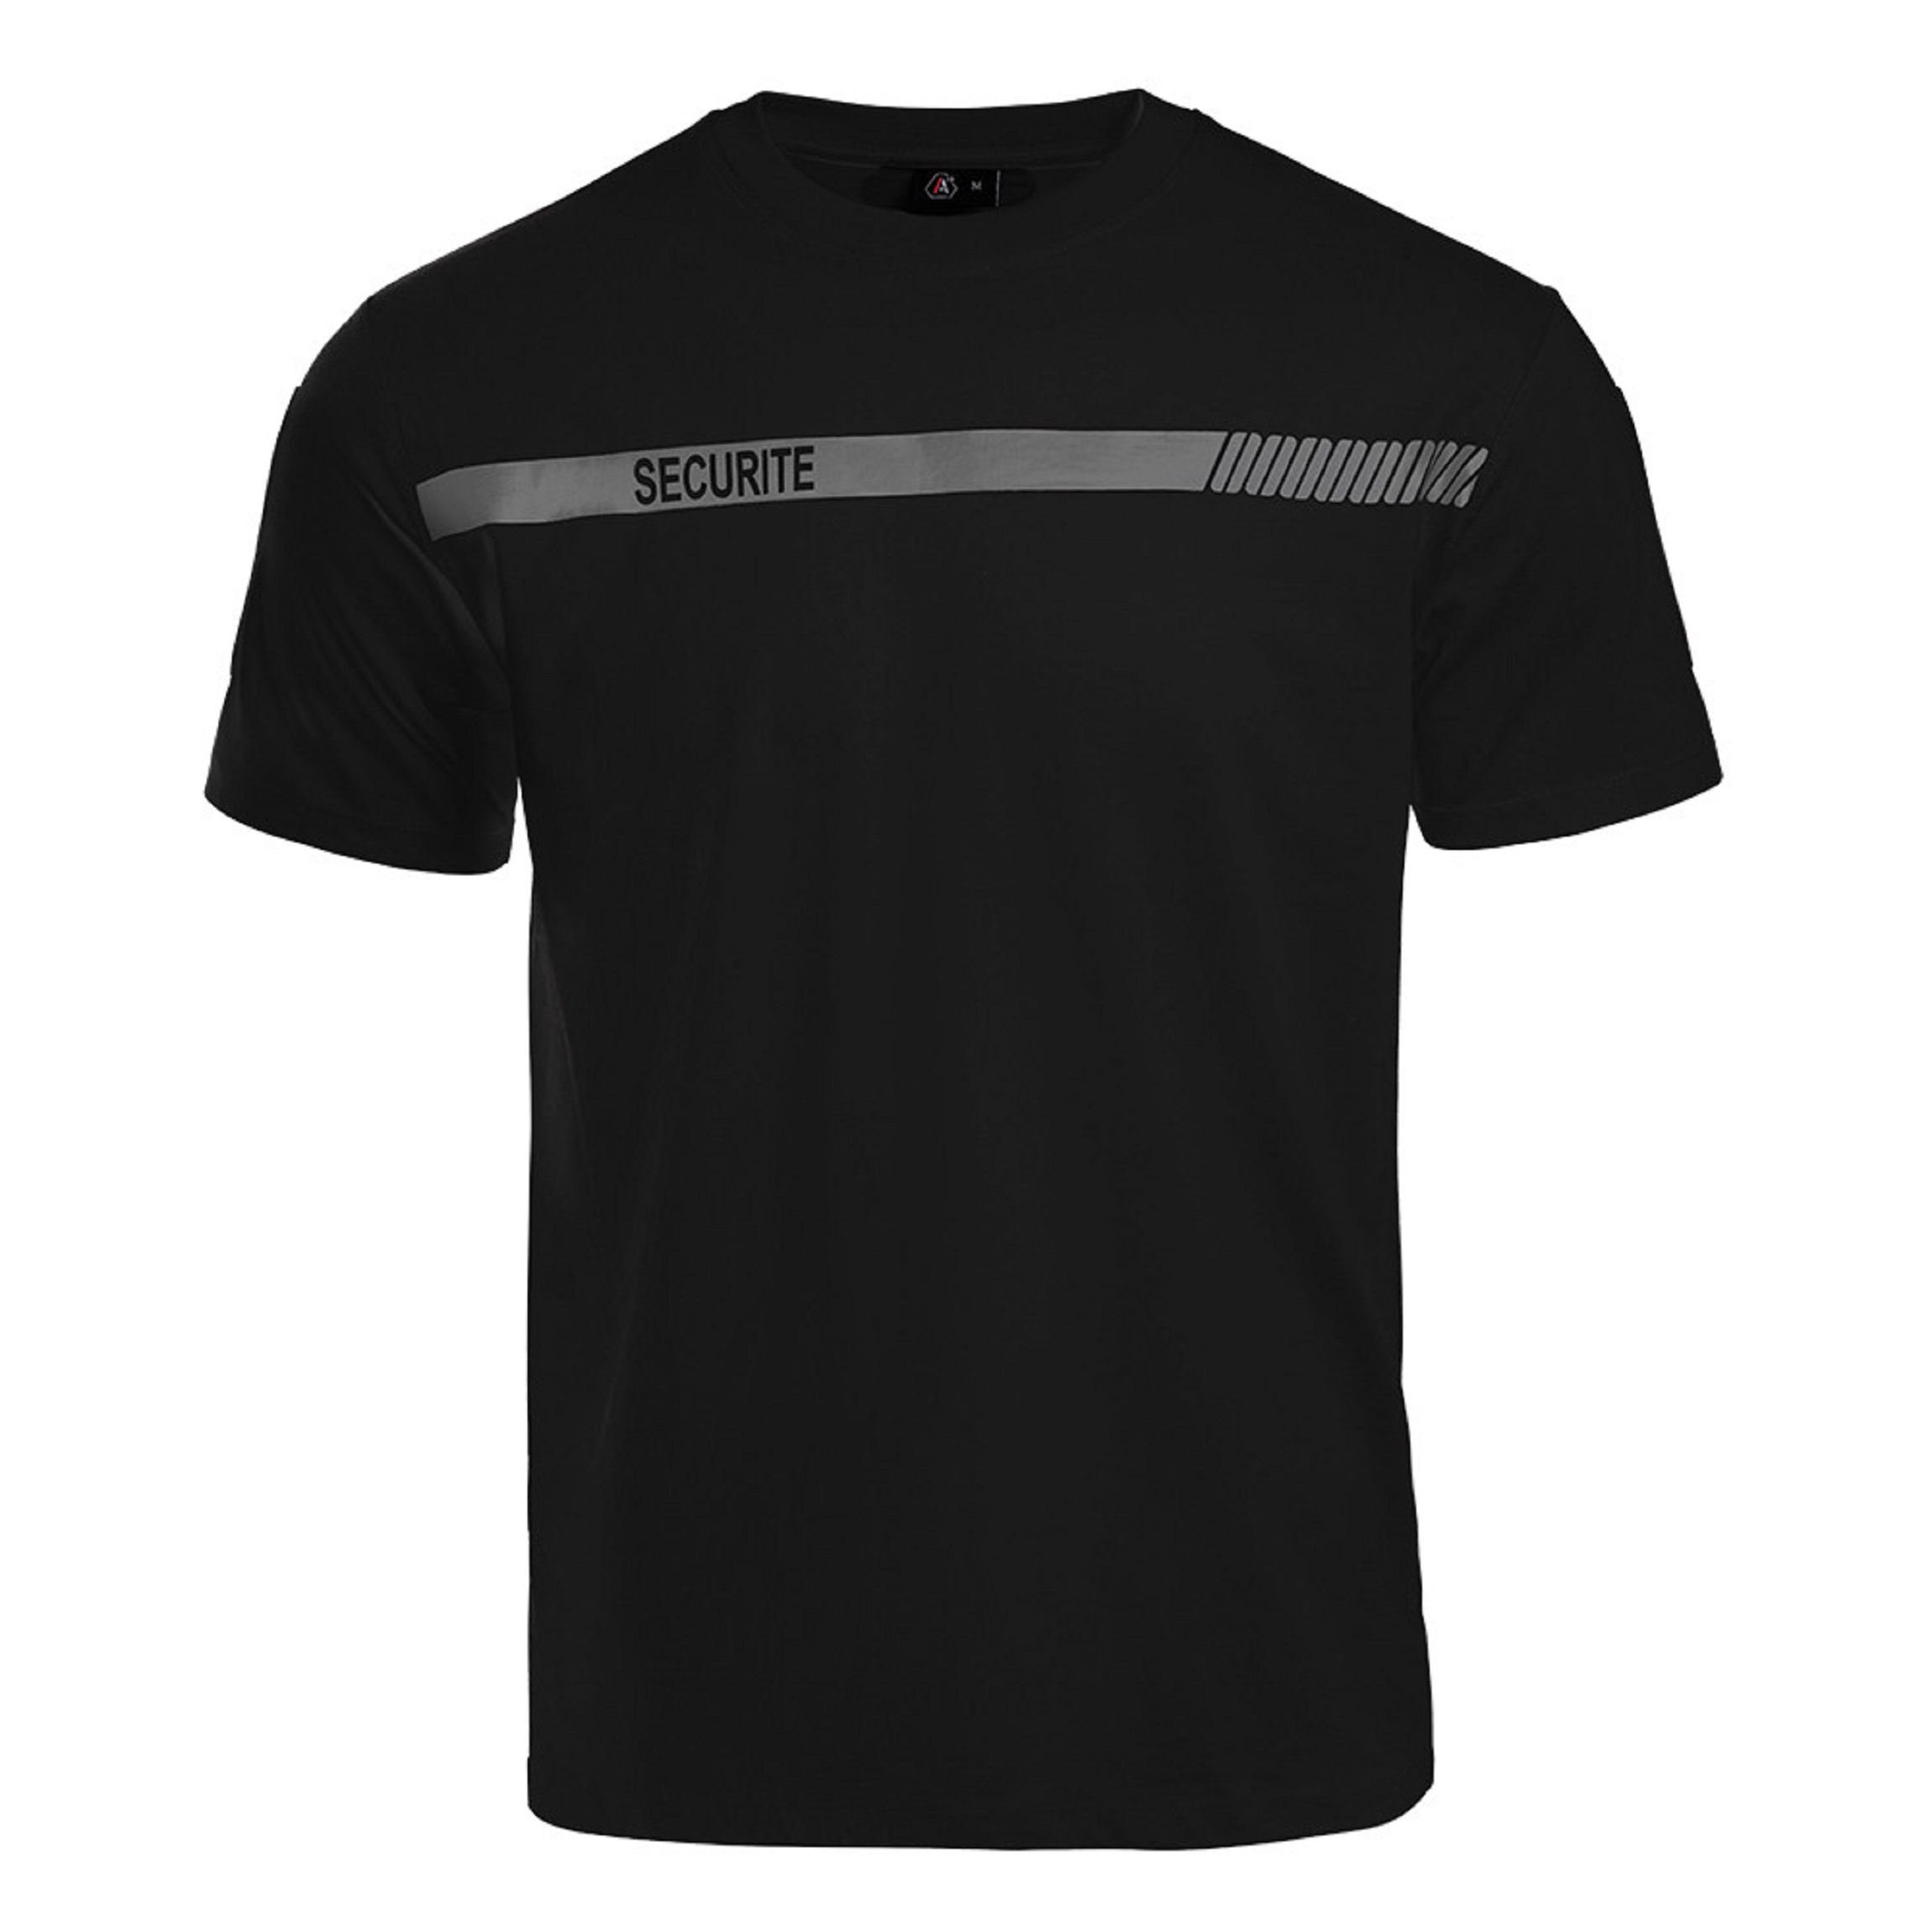 T-shirt Scu-One scurit noir bande grise